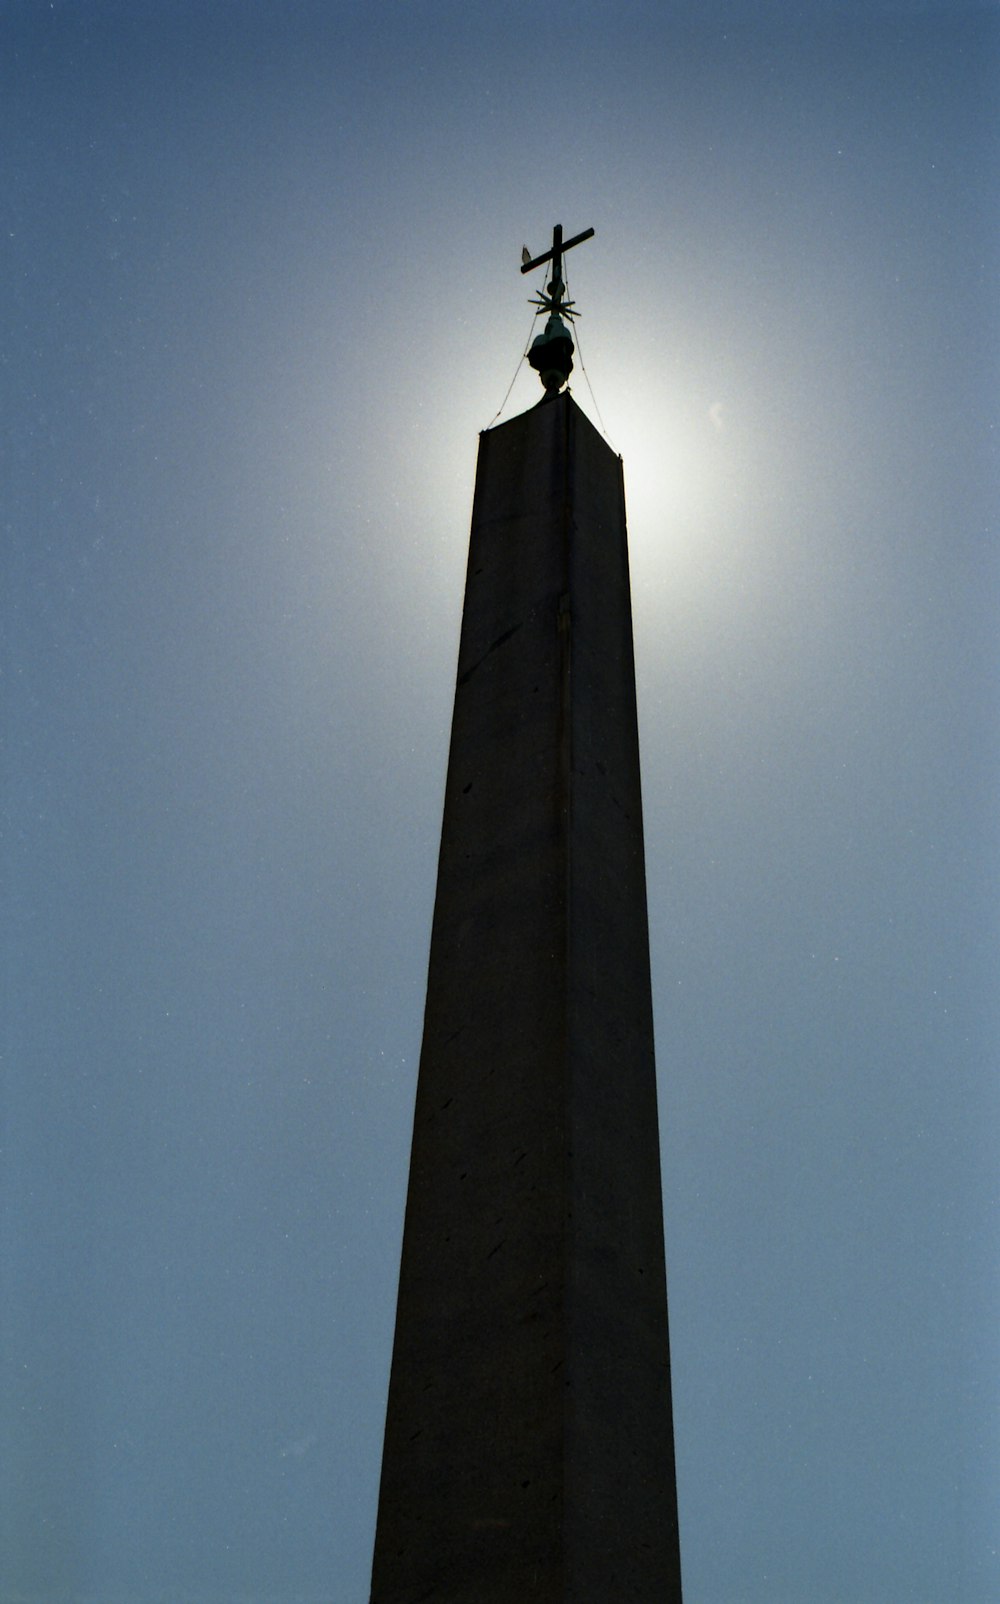 la parte superior de un monumento alto con una cruz en él